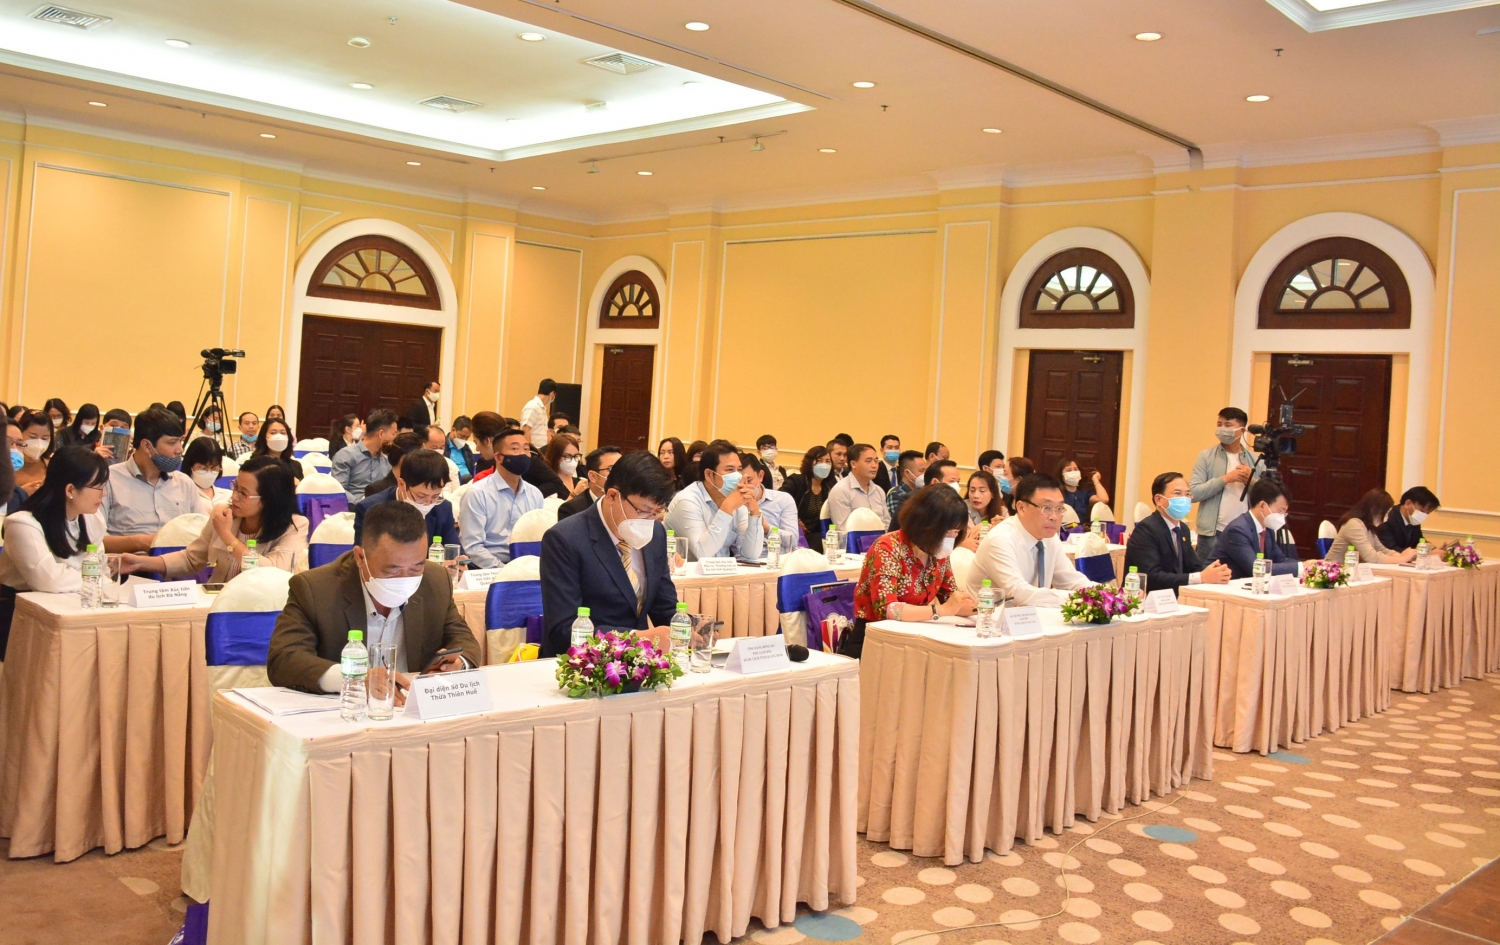 Hội nghị hợp tác phát triển du lịch giữa “Miền di sản diệu kỳ” với Hải Phòng và Quảng Ninh